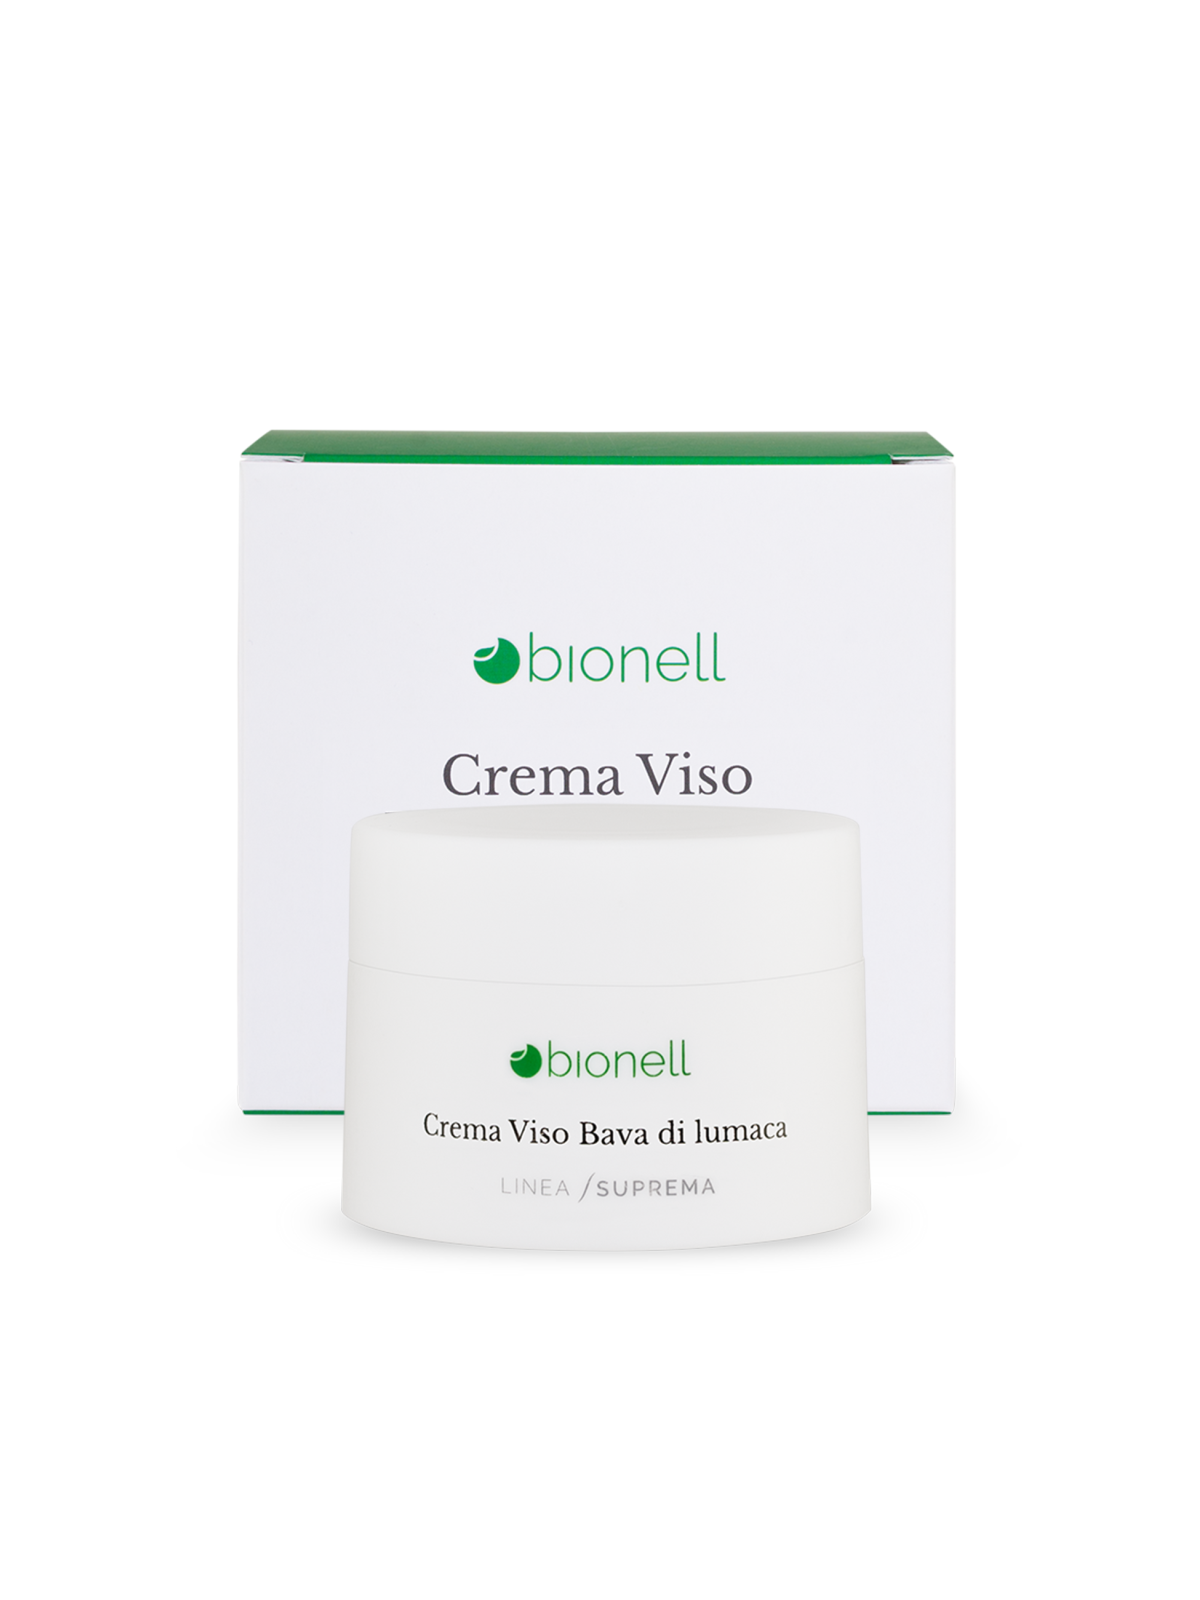 Bionell Crema viso bava di lumaca 50 ml11,00 €